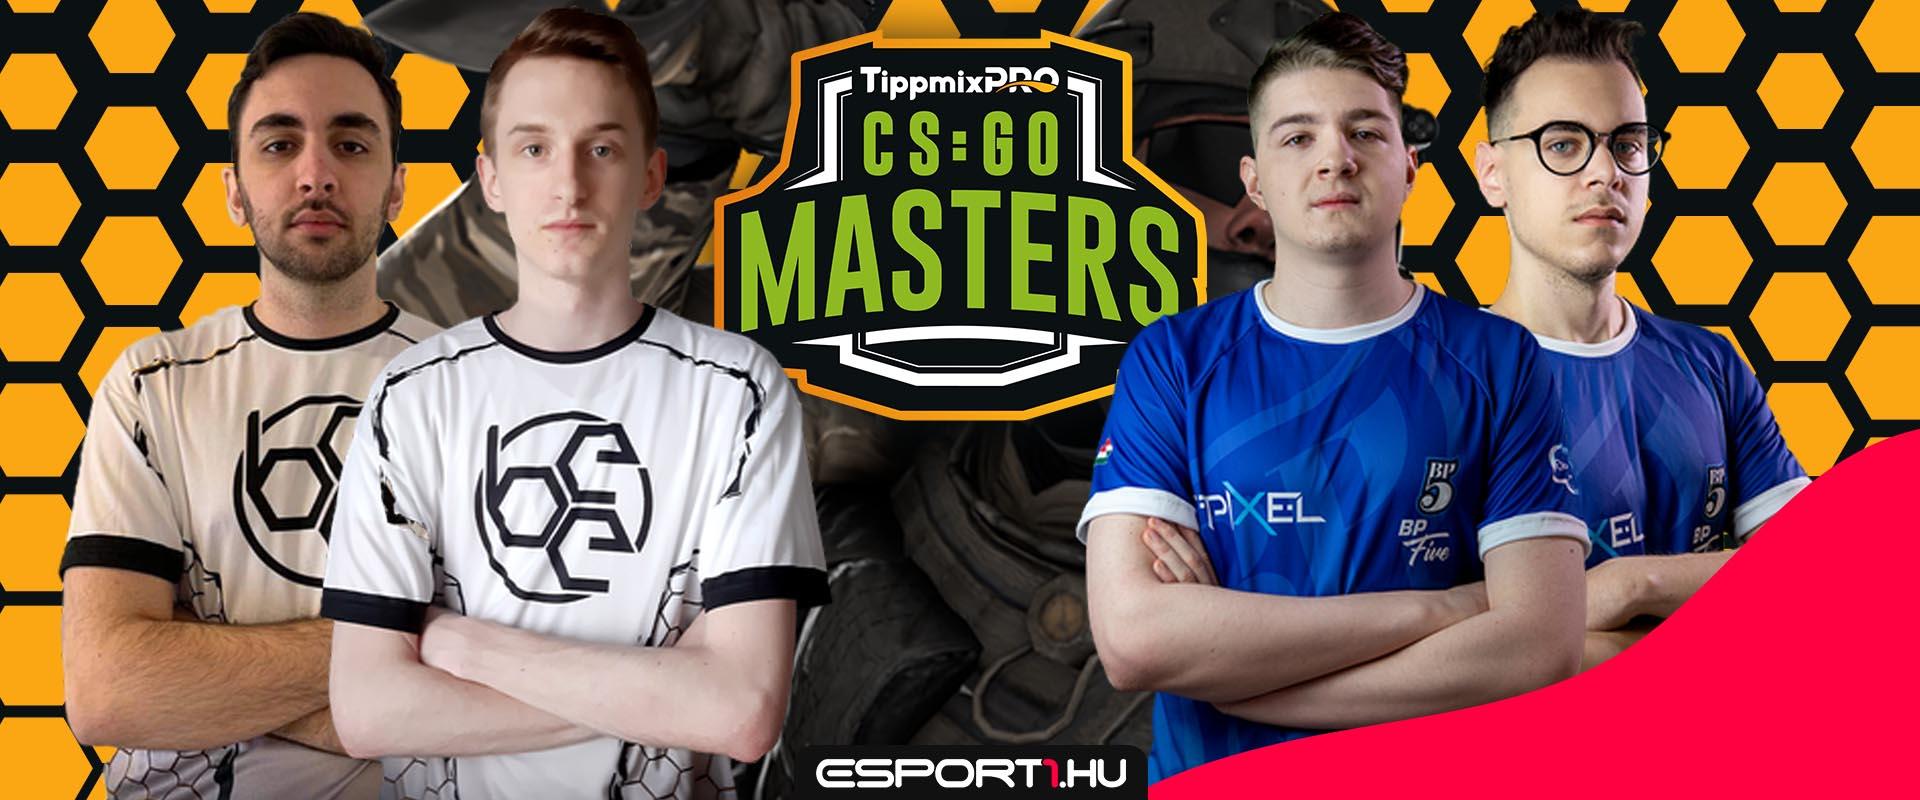 Az alapszakasz legizgalmasabbnak ígérkező meccsével folytatódik a TippmixPro CS:GO Masters